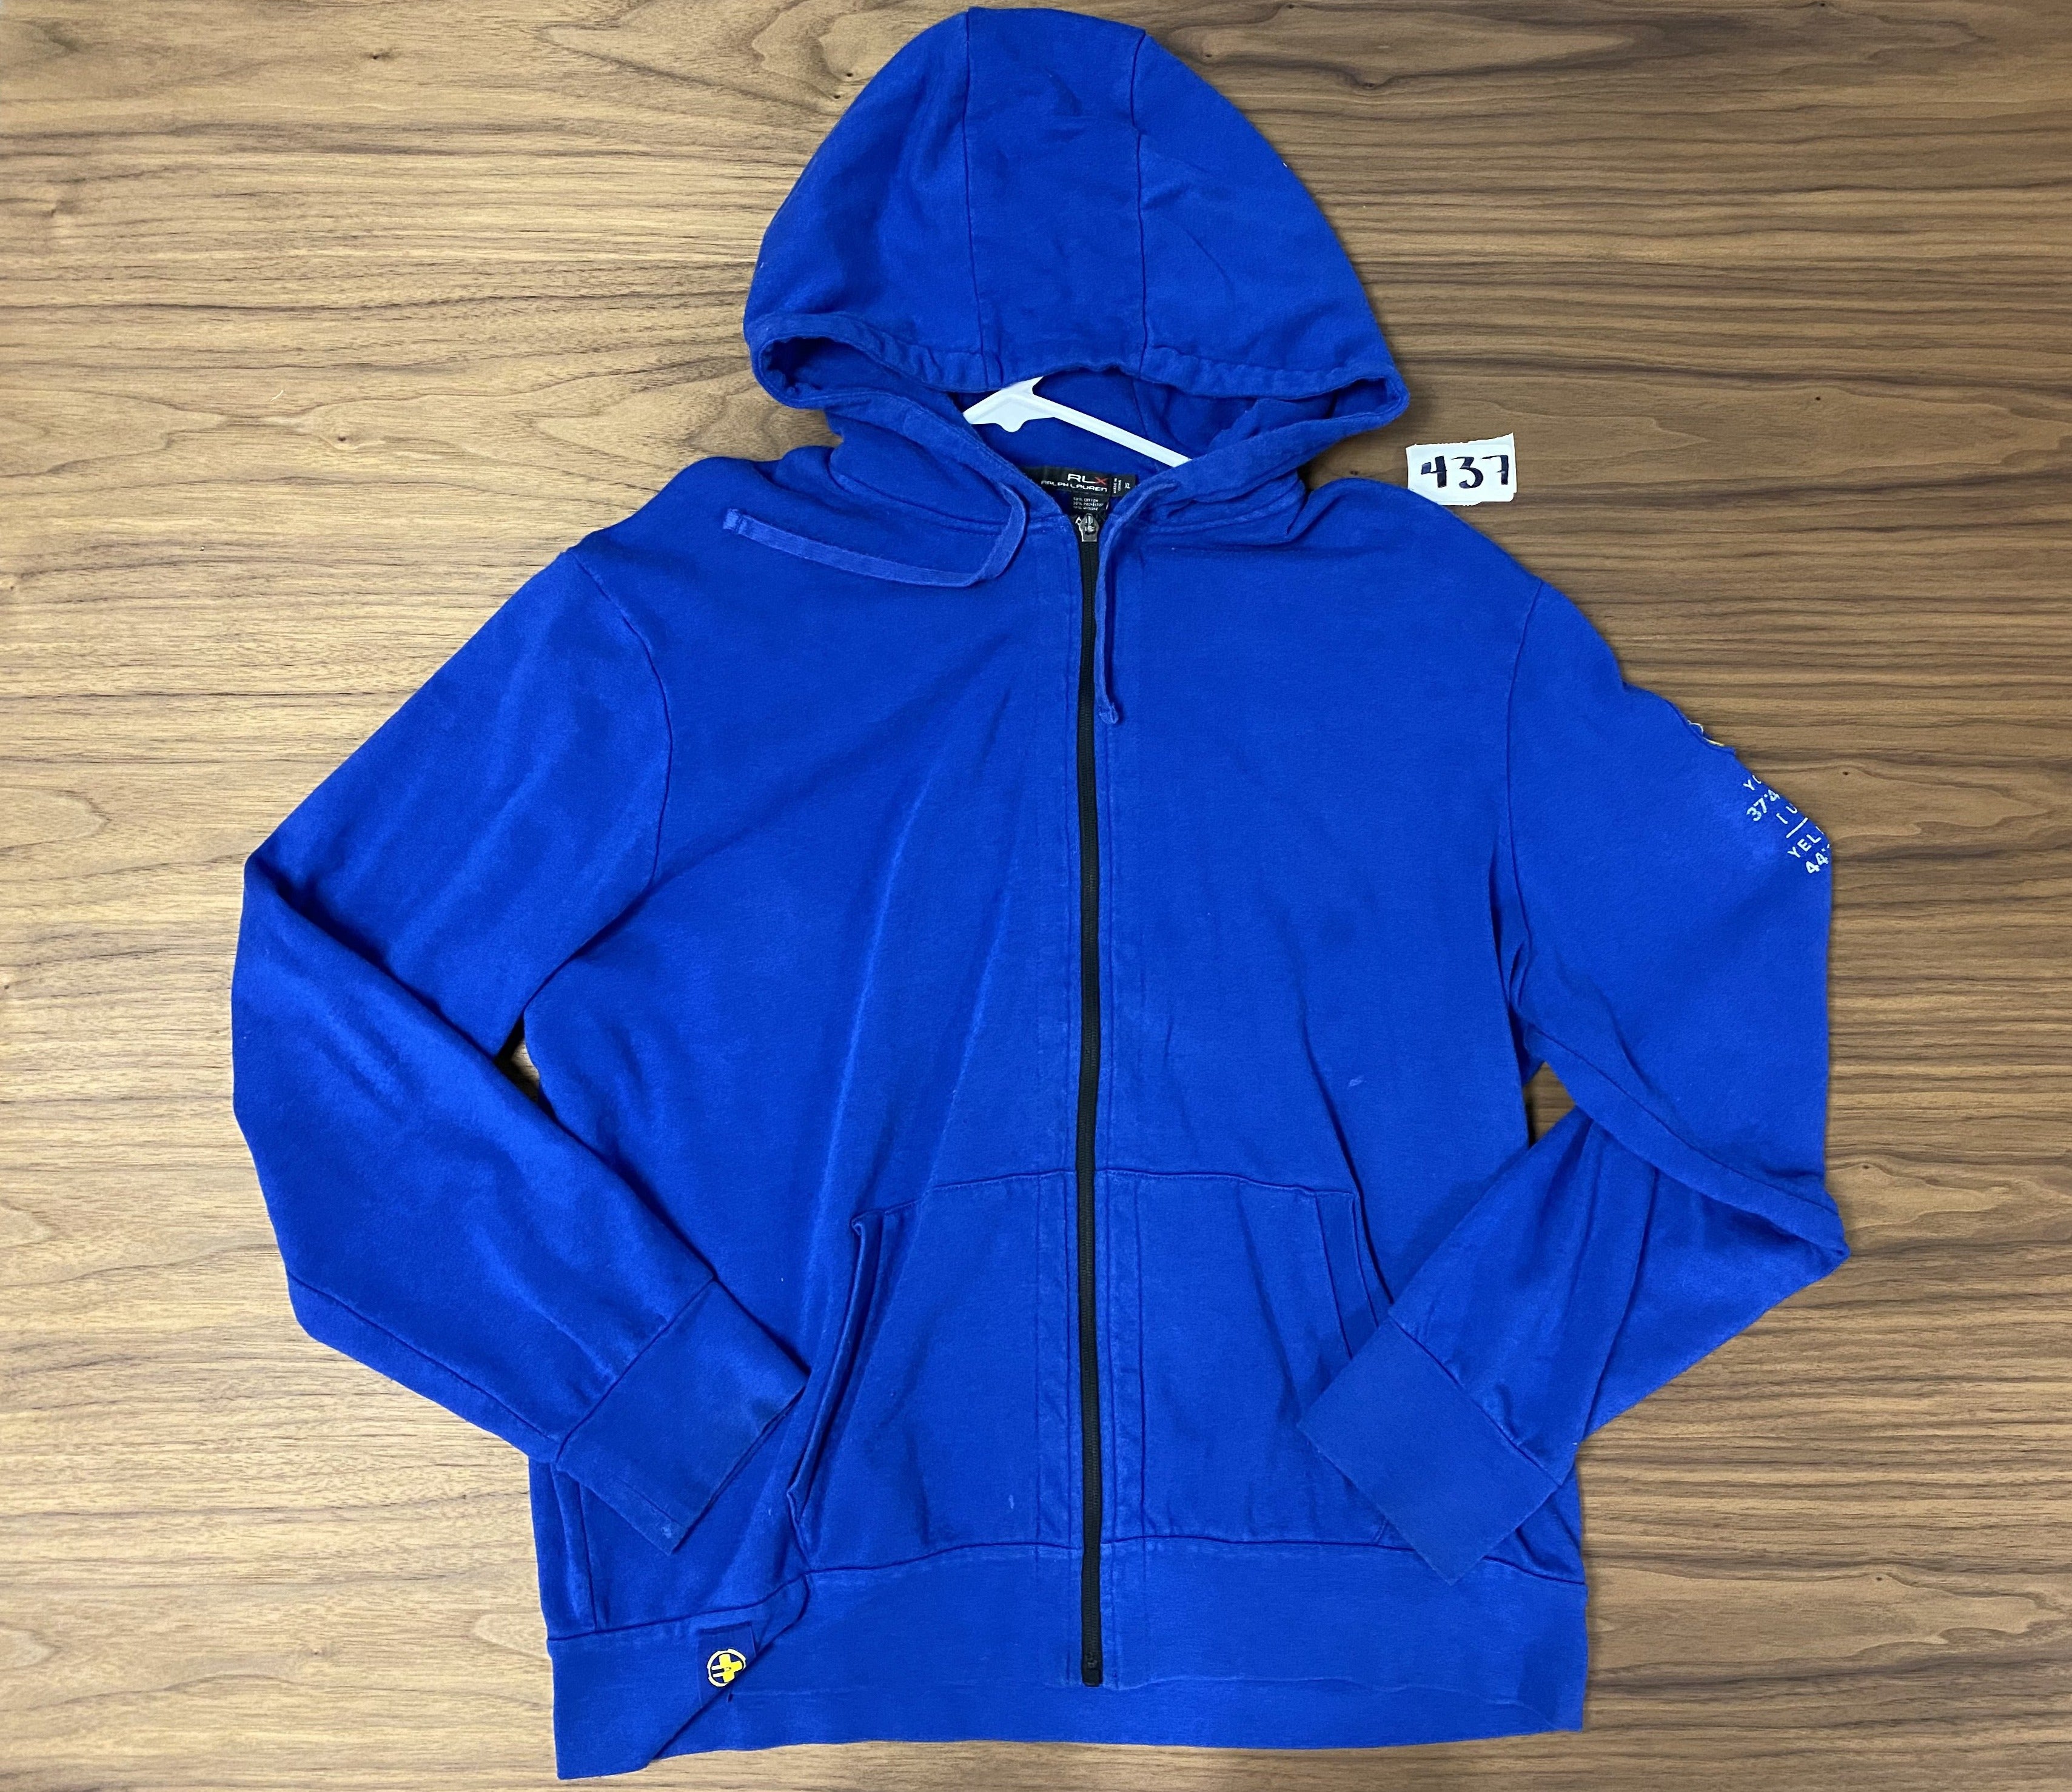 RLX Zip up hooded Sweat shirt - Blue